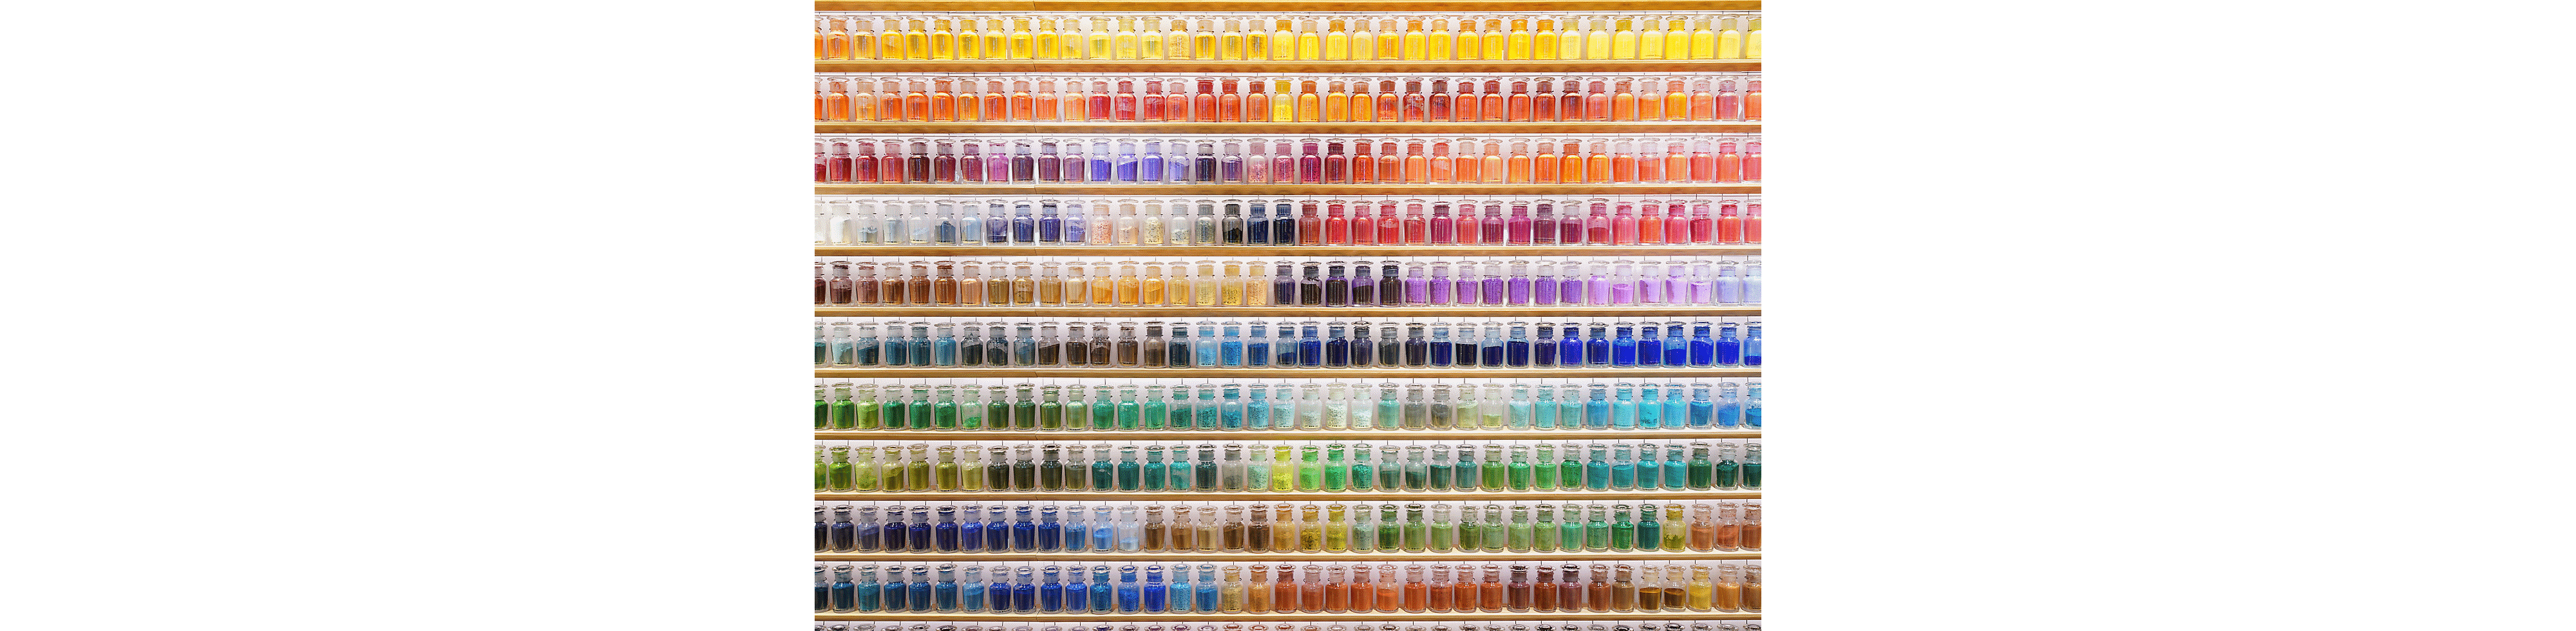 Przykładowe zdjęcie ściany pełnej kolorowych butelek